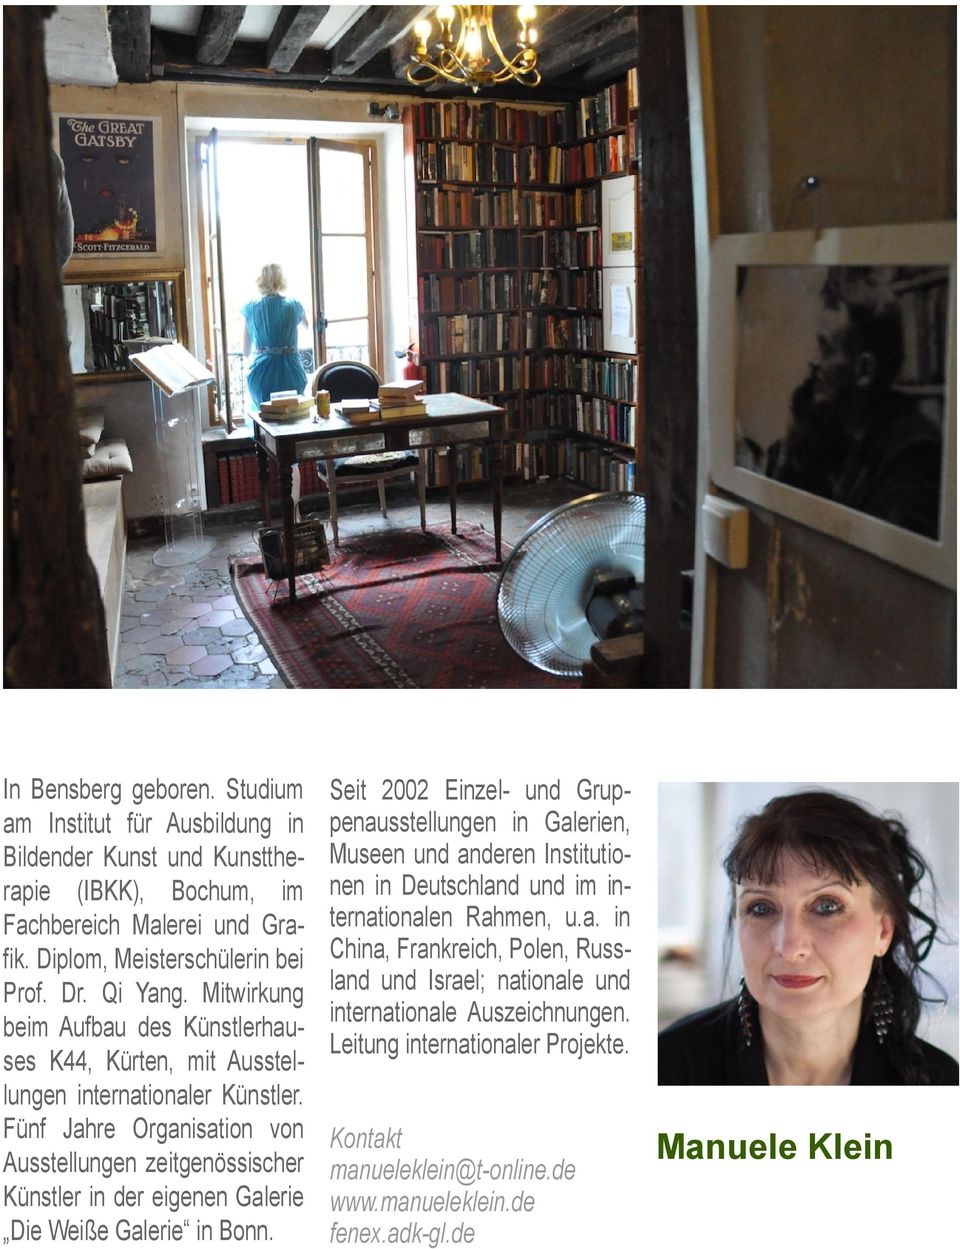 Fünf Jahre Organisation von Ausstellungen zeitgenössischer Künstler in der eigenen Galerie Die Weiße Galerie in Bonn.